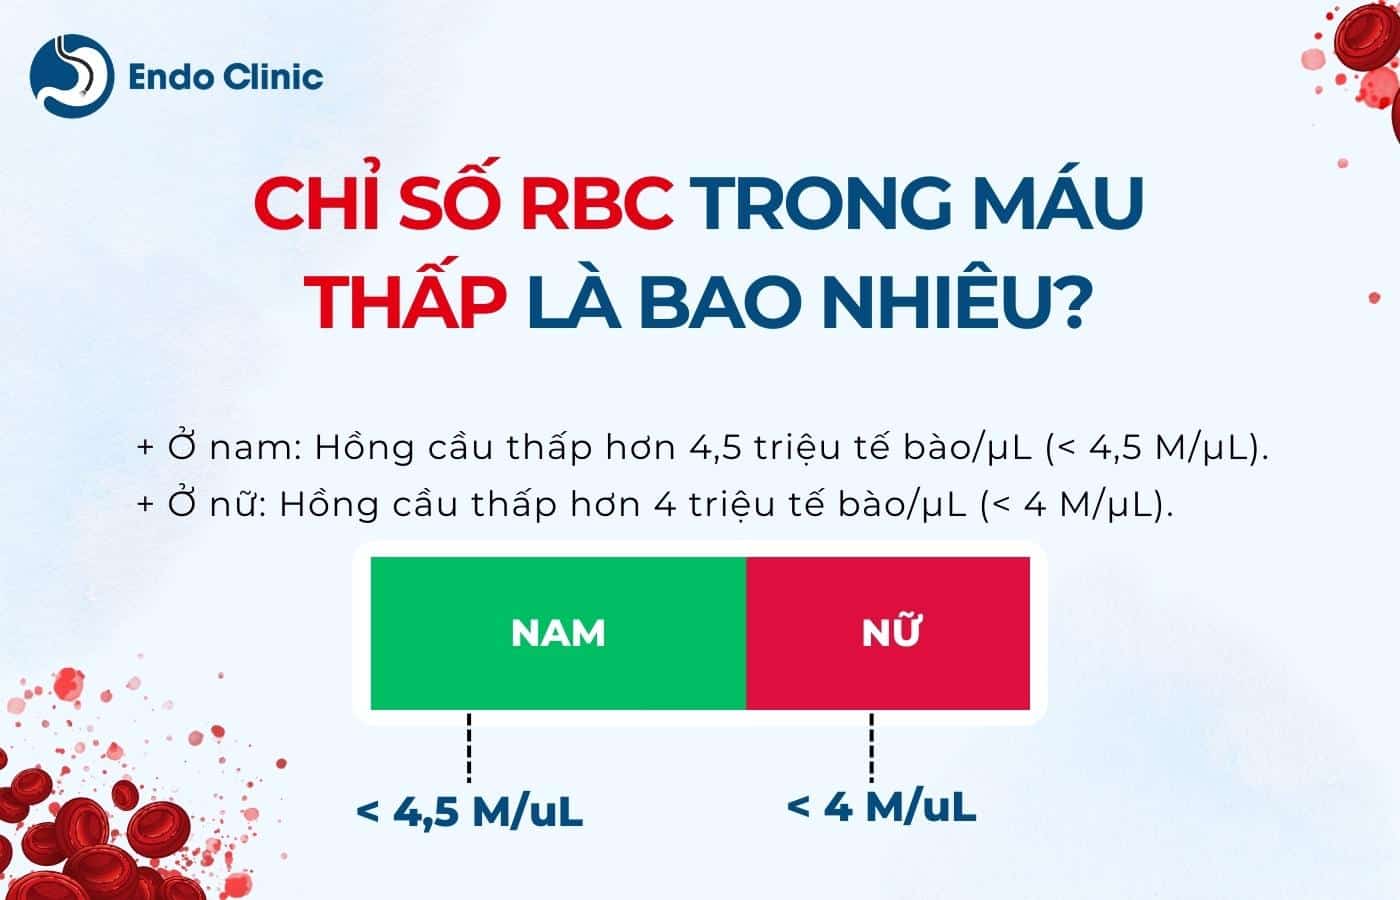 Chỉ số RBC trong máu thấp là bao nhiêu?